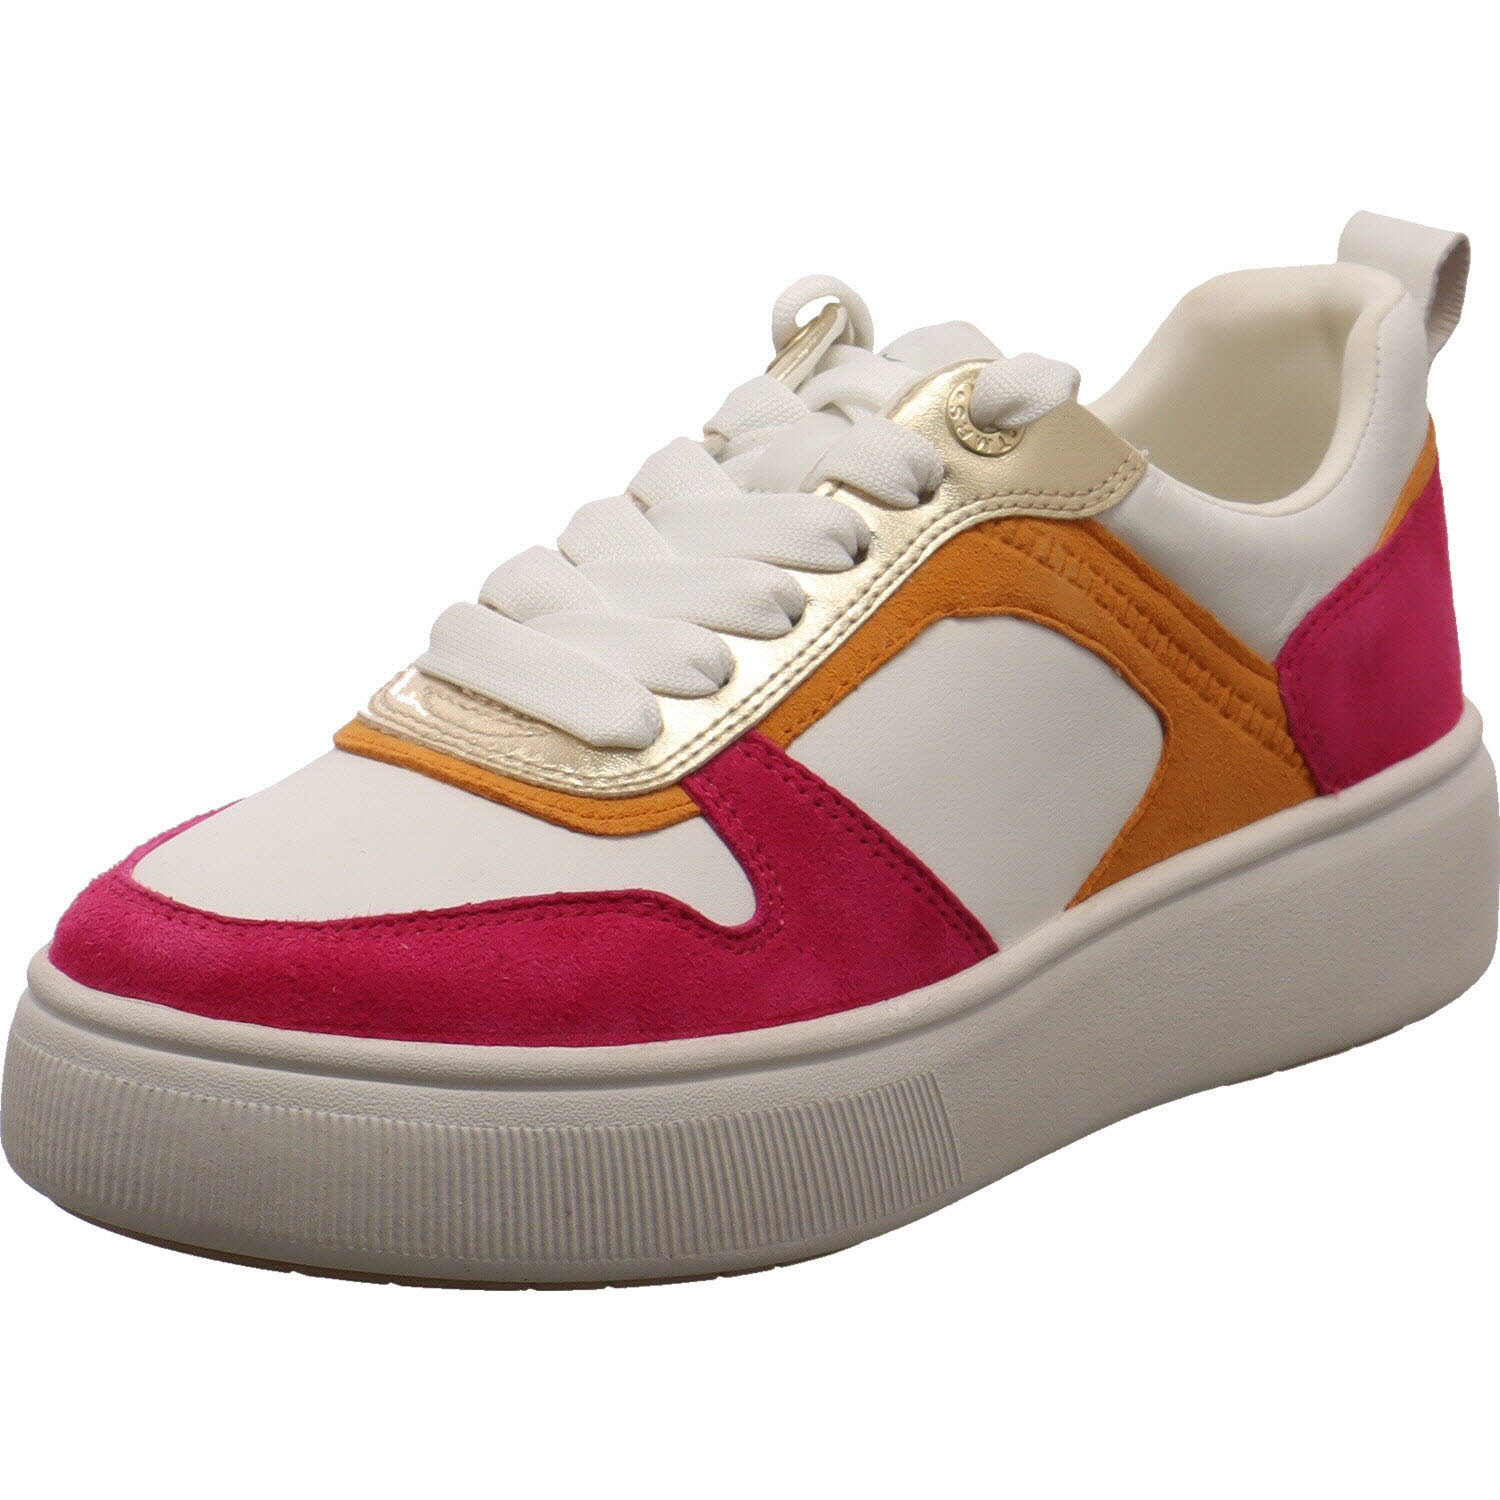 Tamaris Sneaker low Weiß/pink/orange für Damen